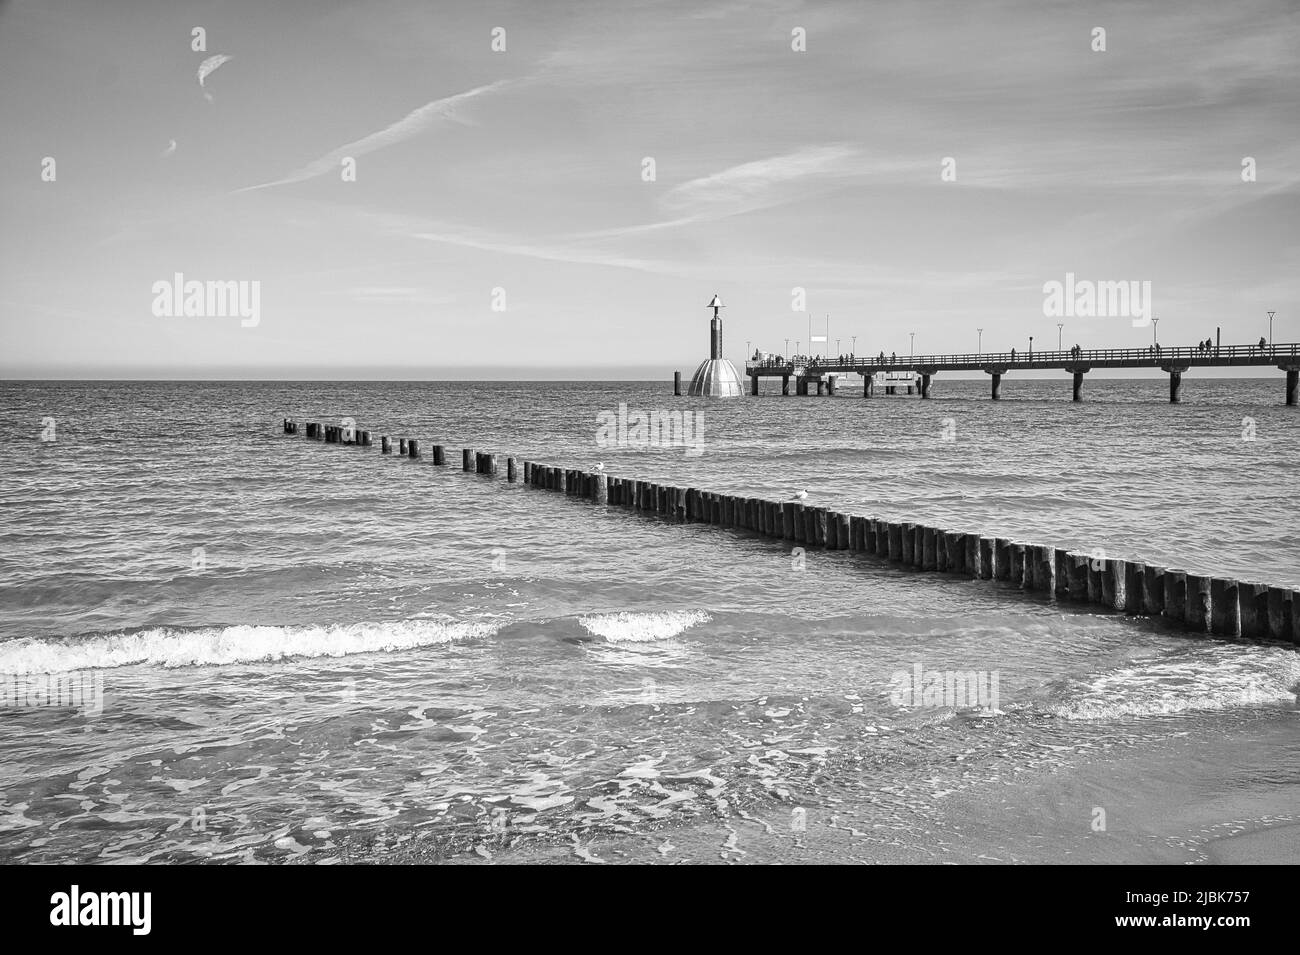 La jetée de Zingst sur la mer Baltique, avec une longue exposition en noir et blanc. Une attraction de bord de mer dans cette région Banque D'Images